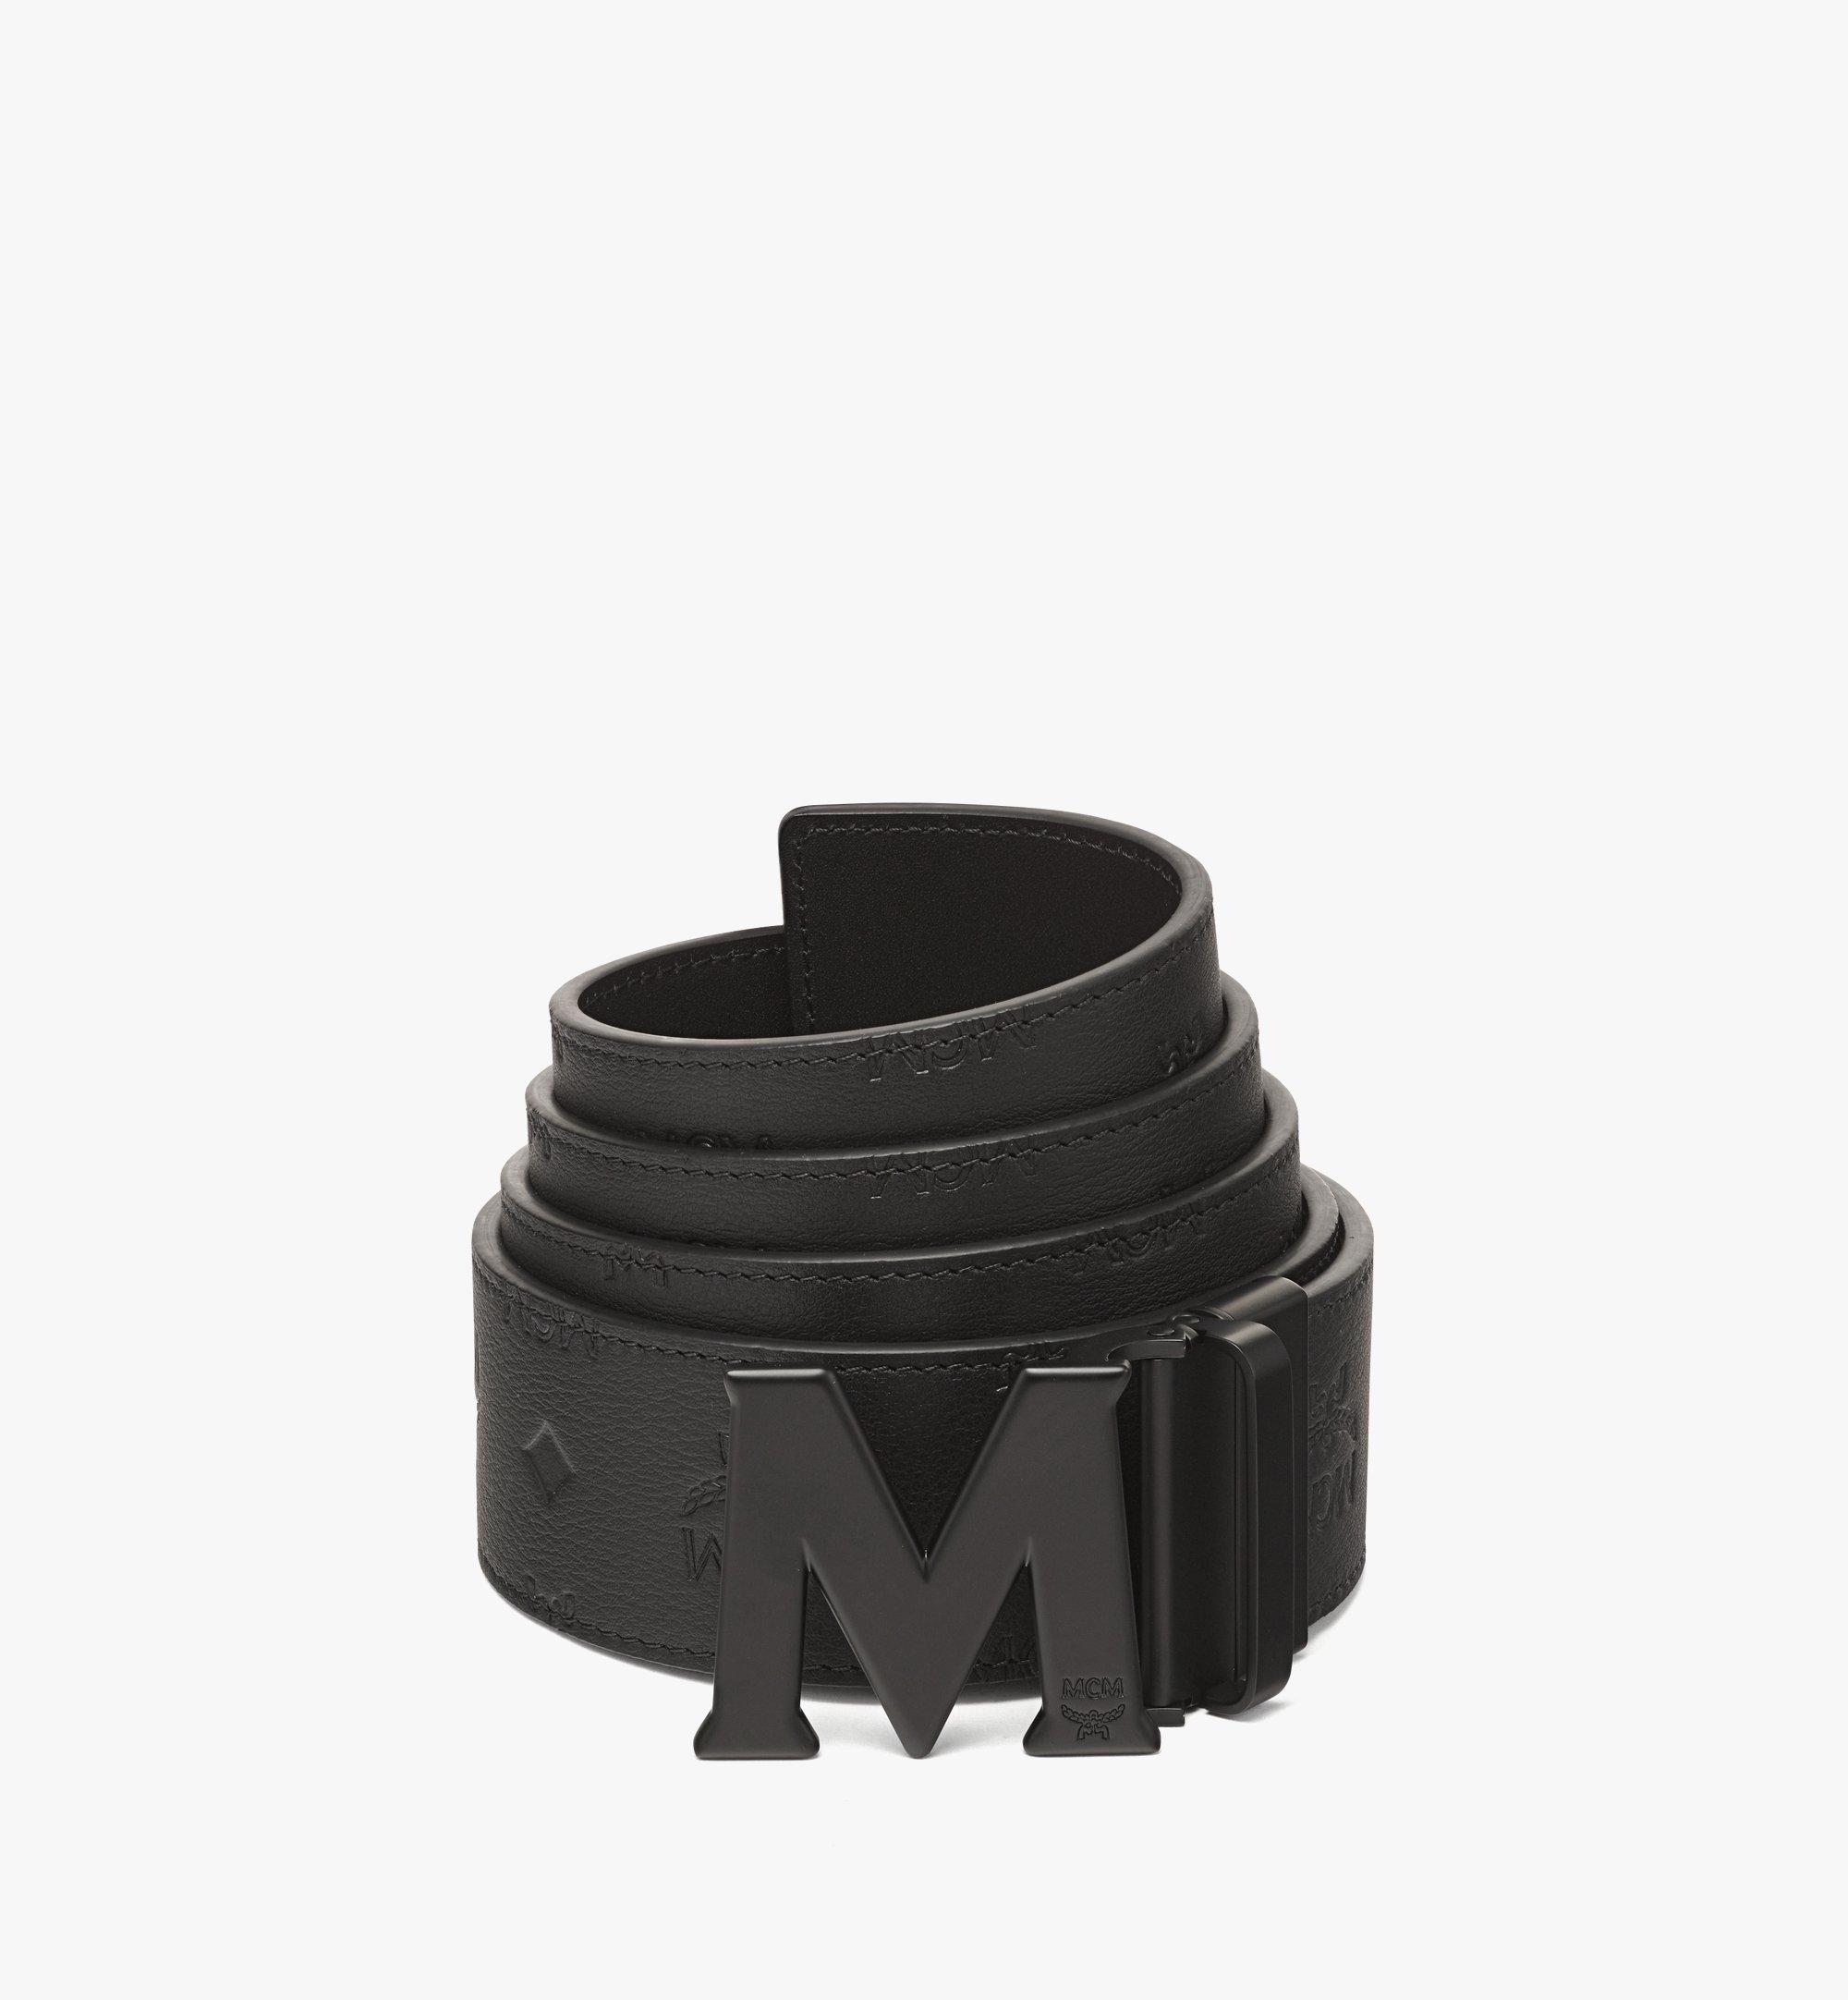 MCM Belts for Men, Online Sale up to 47% off